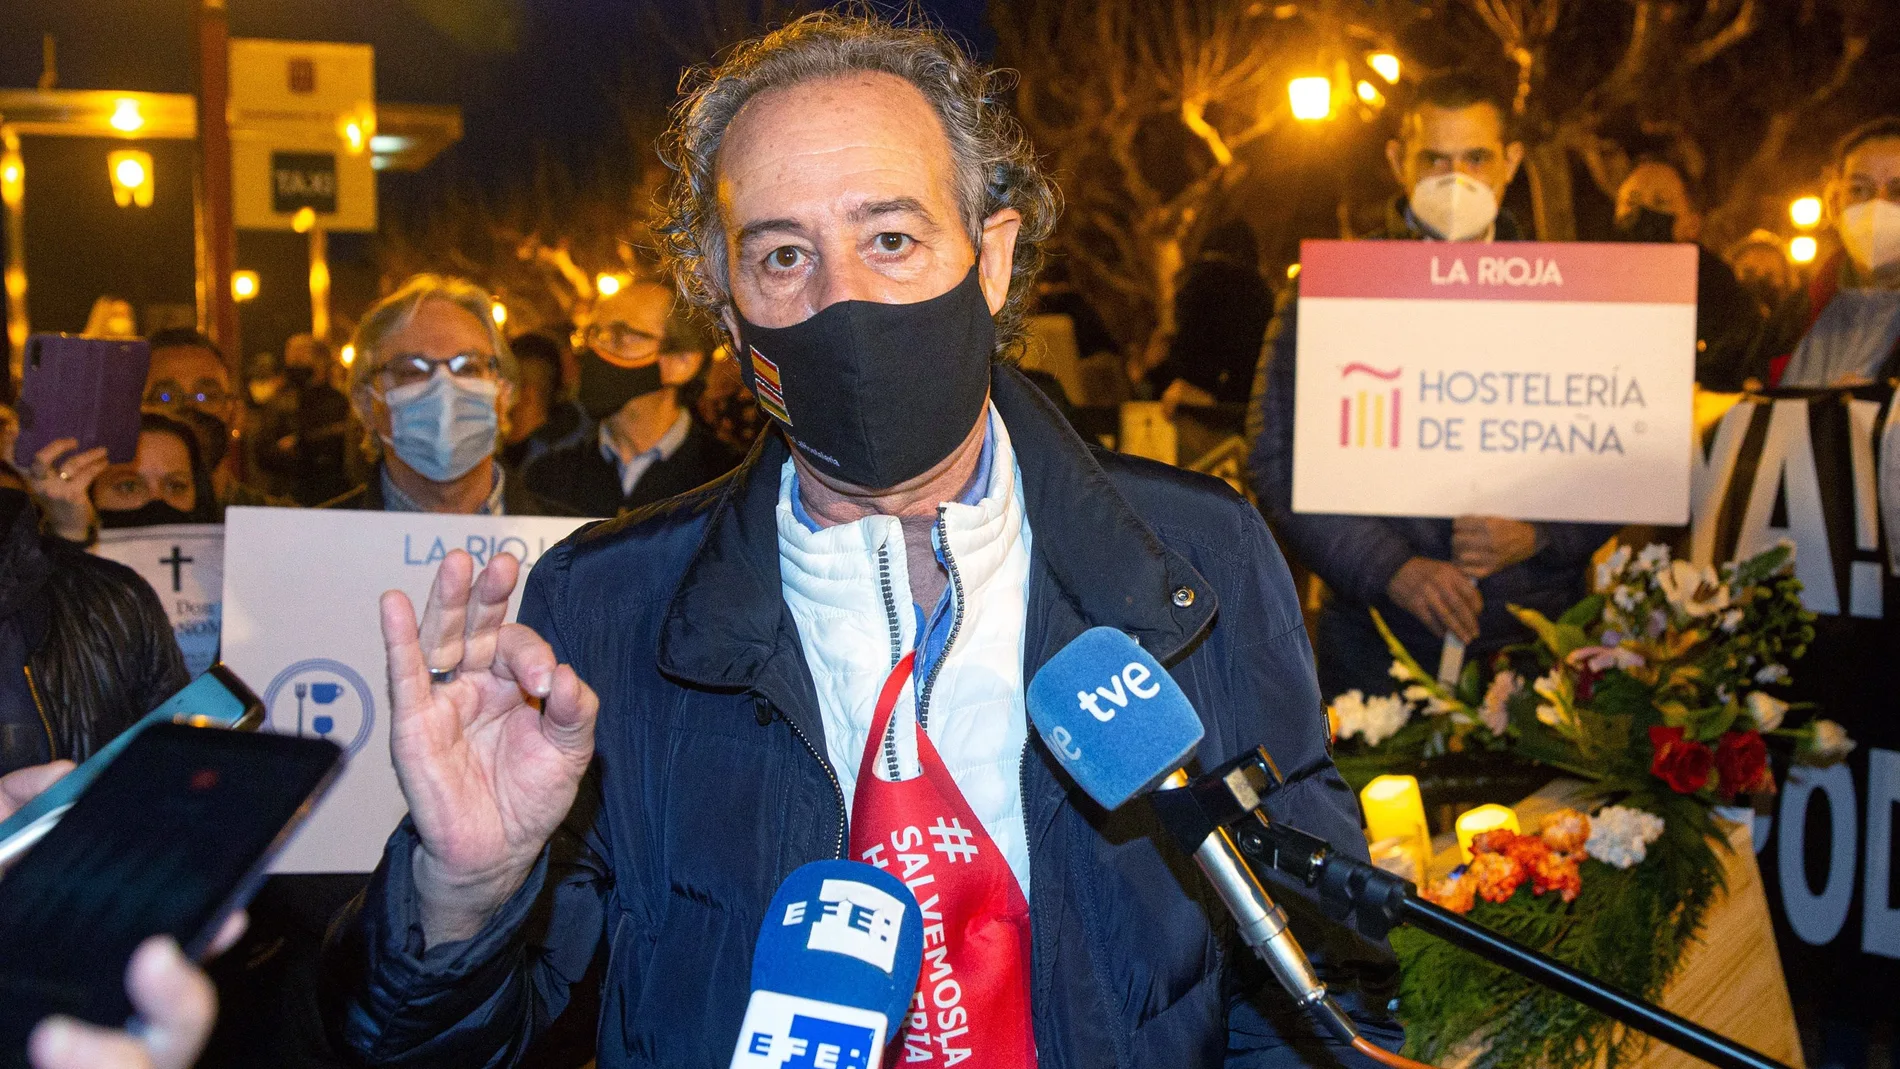 El presidente de los hosteleros de La Rioja, Francisco Martínez Bergés, atiende a la Prensa en medio de la manifestación contra el cierre de la hostelería